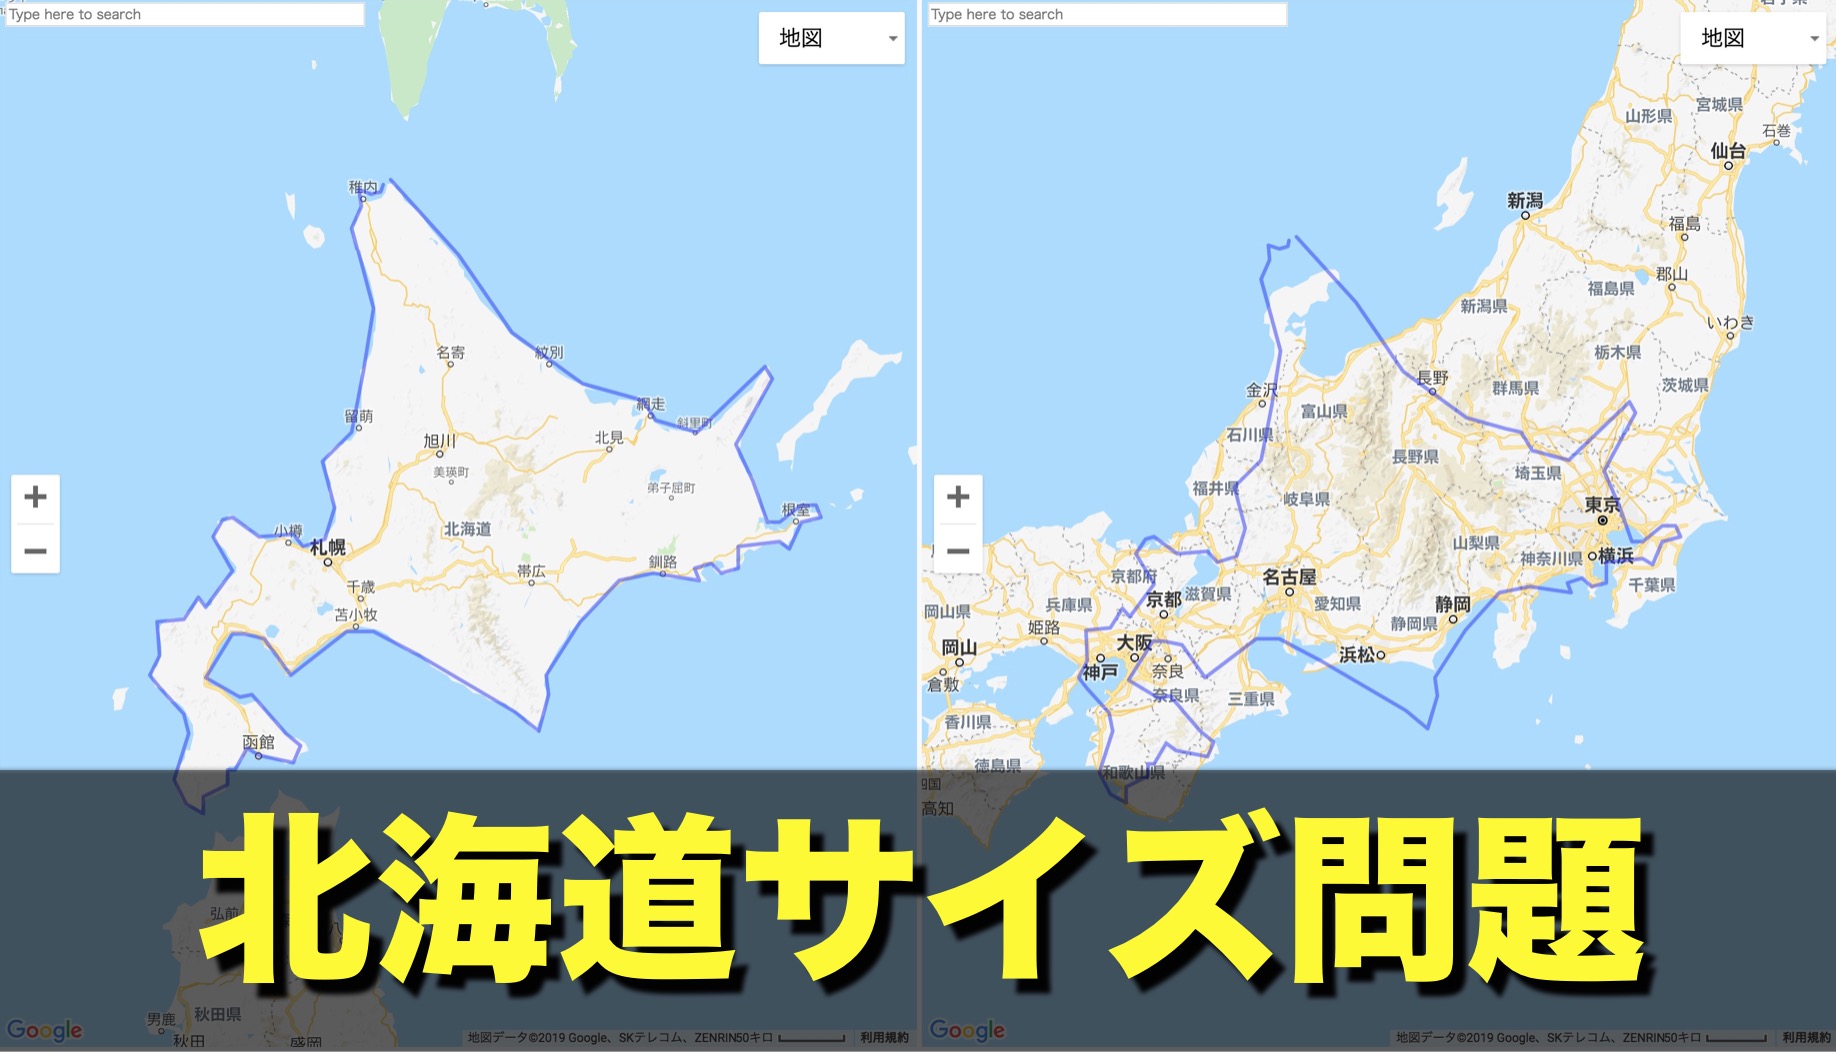 北海道はデッカイどう 北海道旅行計画が崩壊している 北海どうでしょう